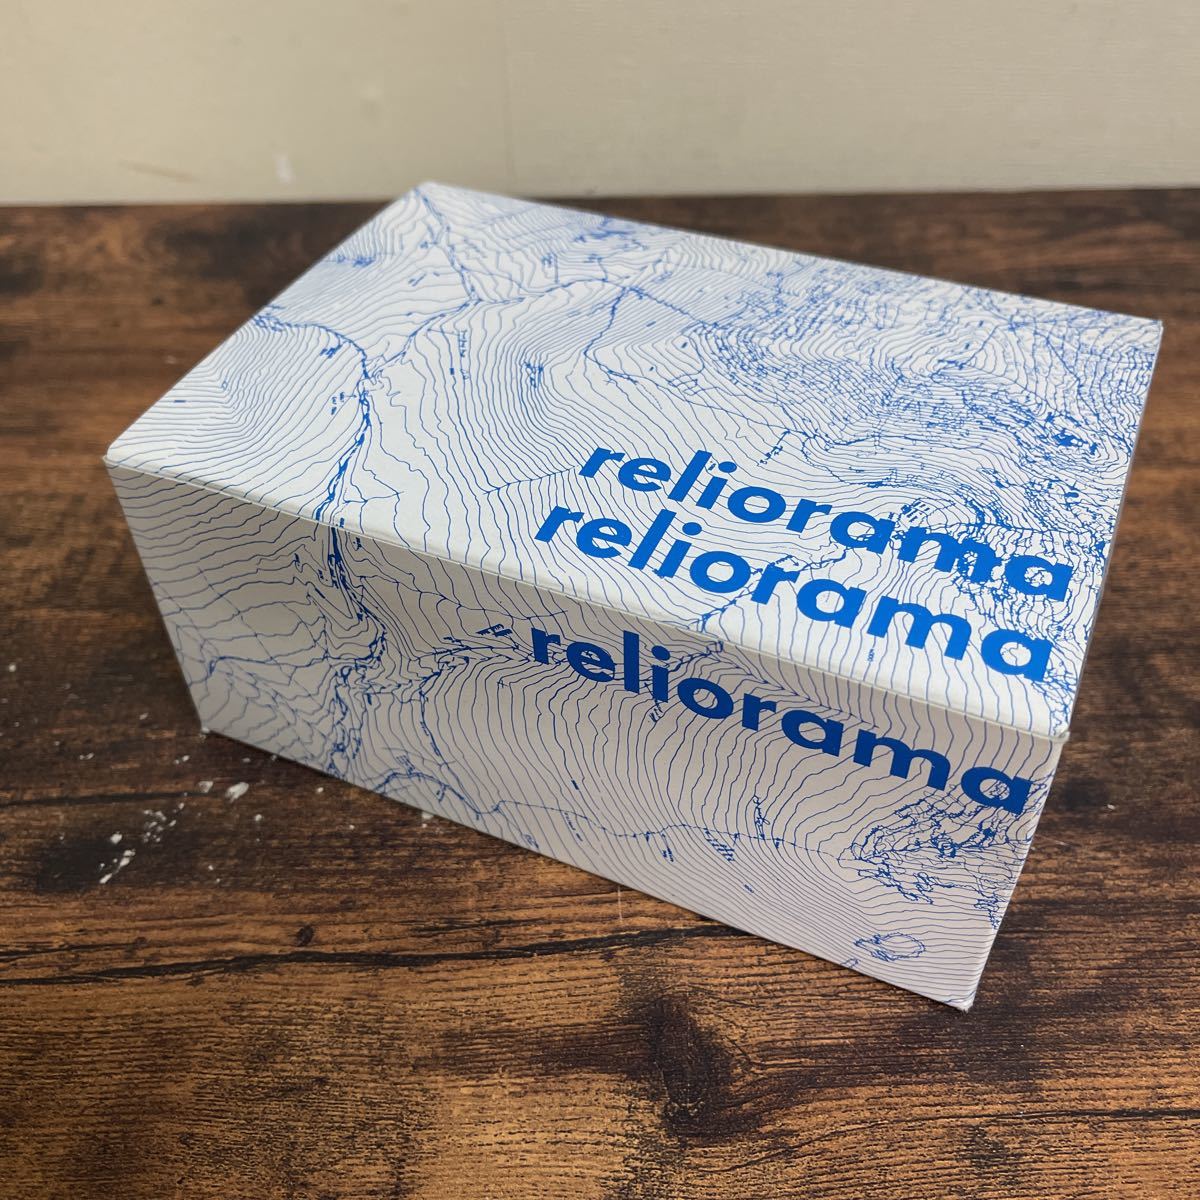 Reliorama rely o лама Франция Италия Montblanc Швейцария производства точный горы модель 1/75,000 шкала не использовался товар 